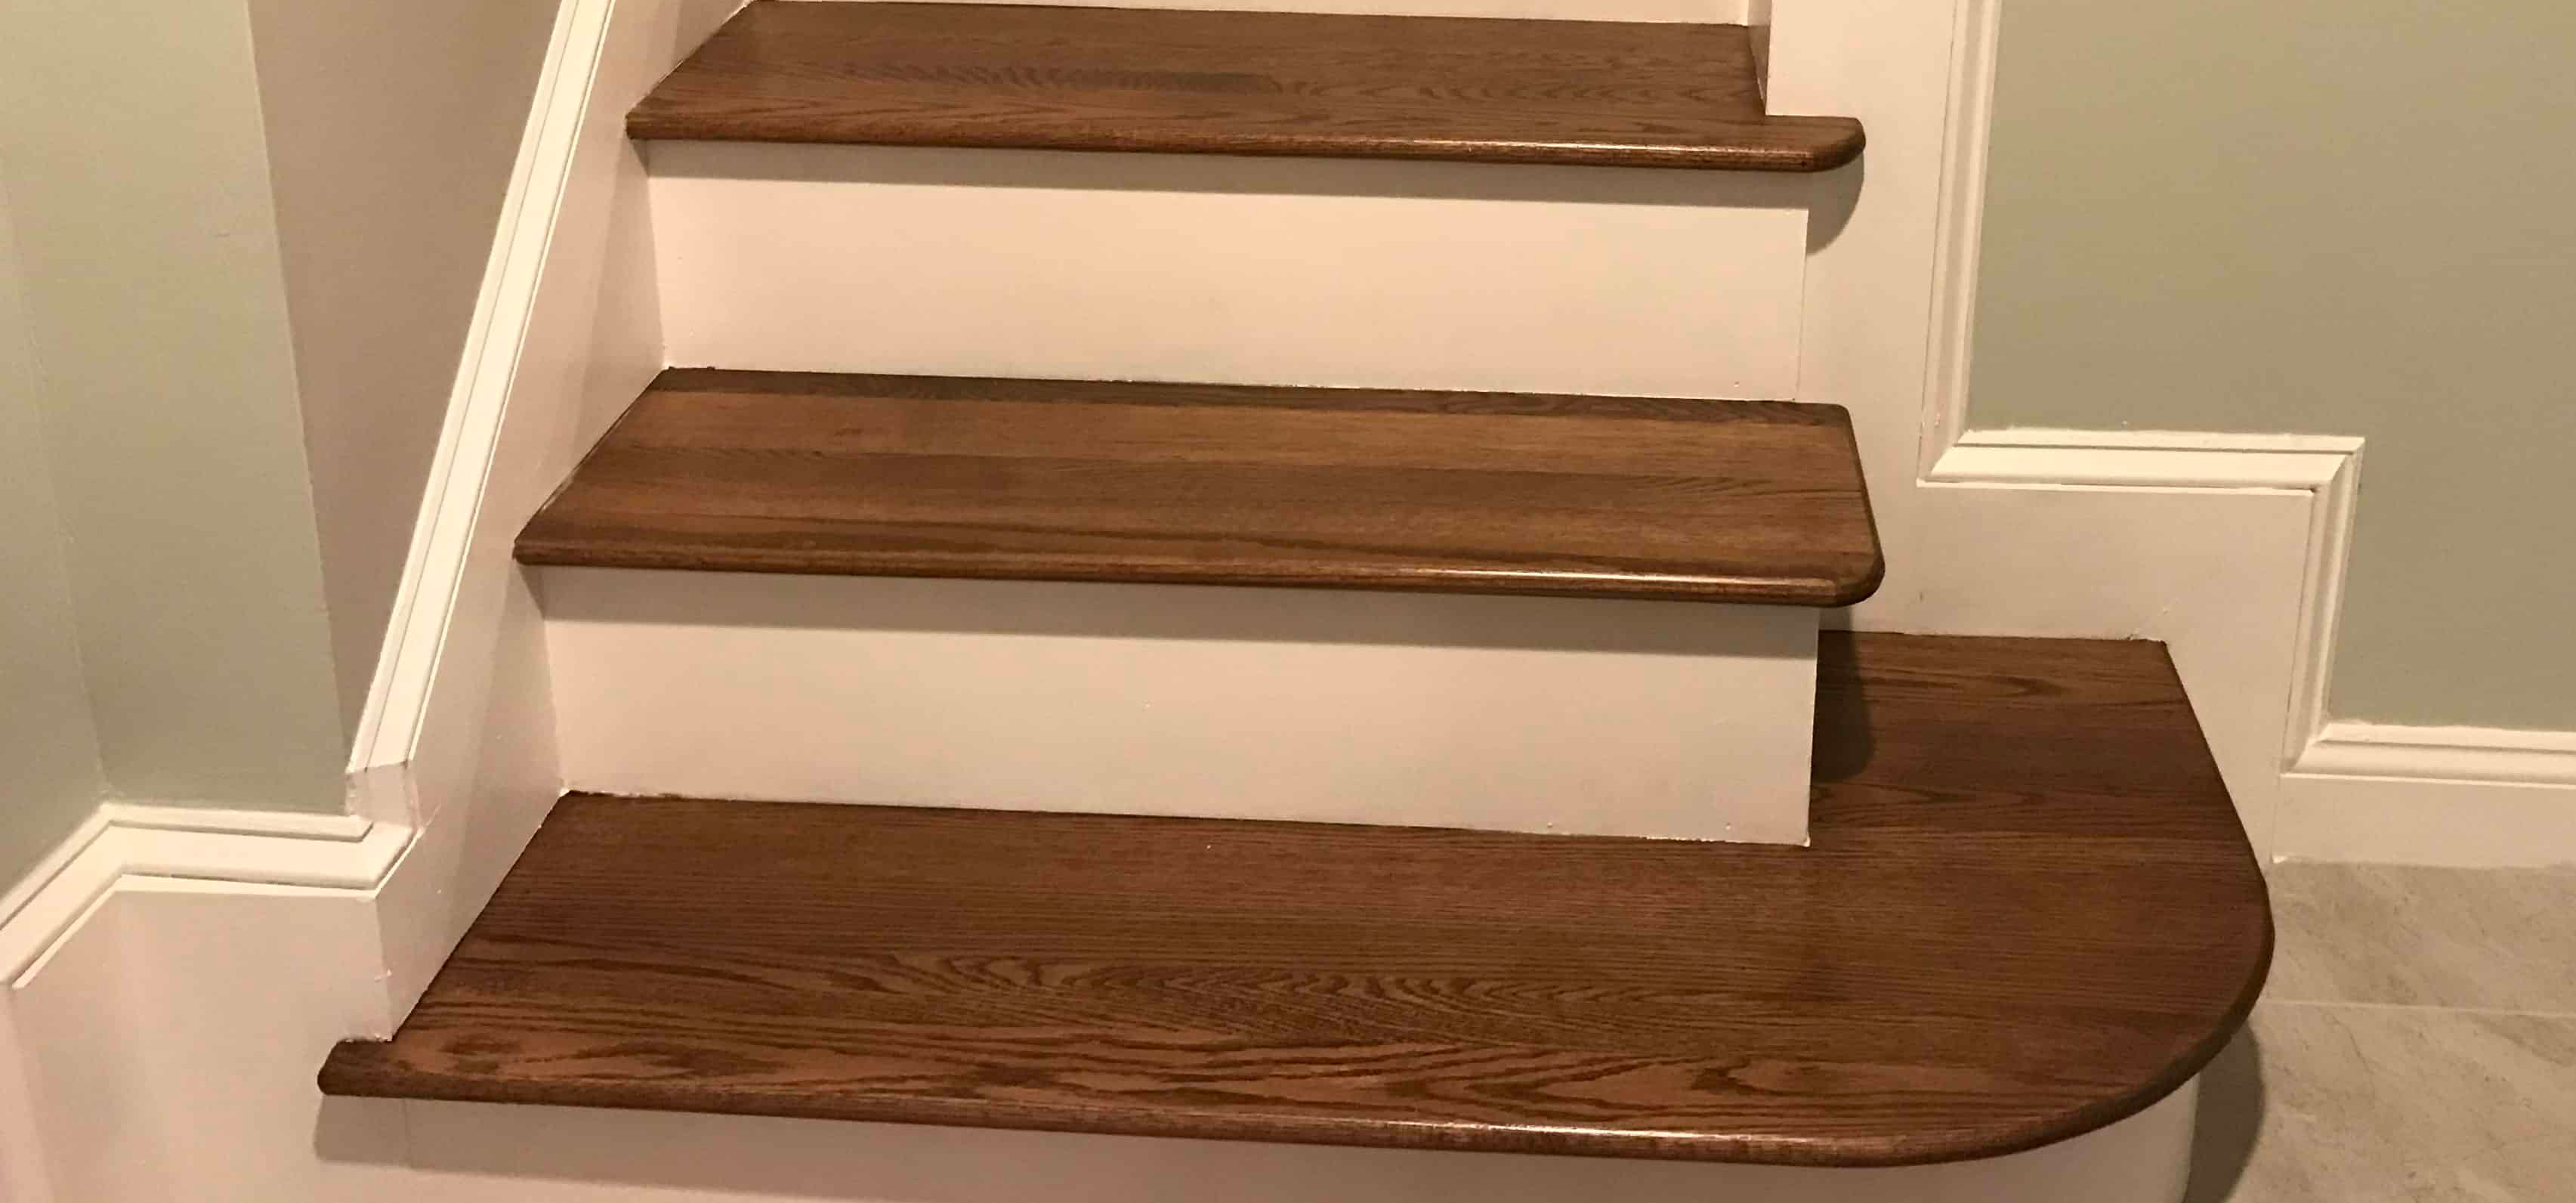 روش های ساخت کف پله چوبی